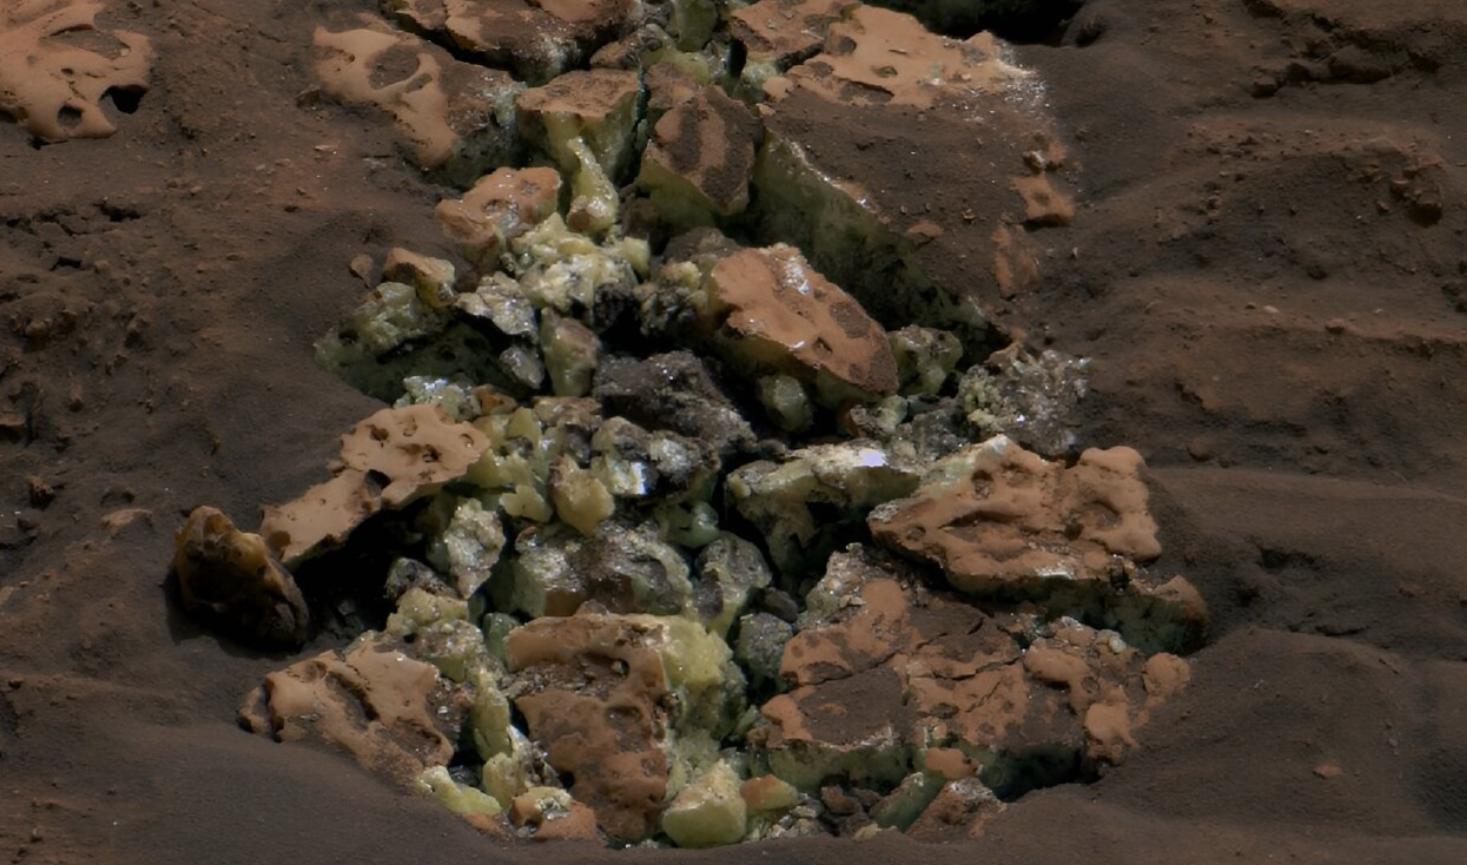 Ovi žuti kristali otkriveni su nakon što je NASA-in rover Curiosity 30. svibnja prešao preko stijene i razbio je. Pomoću instrumenta na roverovoj ruci, znanstvenici su kasnije utvrdili da su ovi kristali elementarni sumpor—prvi put da je ovakva vrsta sumpora pronađena na Crvenom planetu. Zasluge: NASA/JPL-Caltech/MSSS.